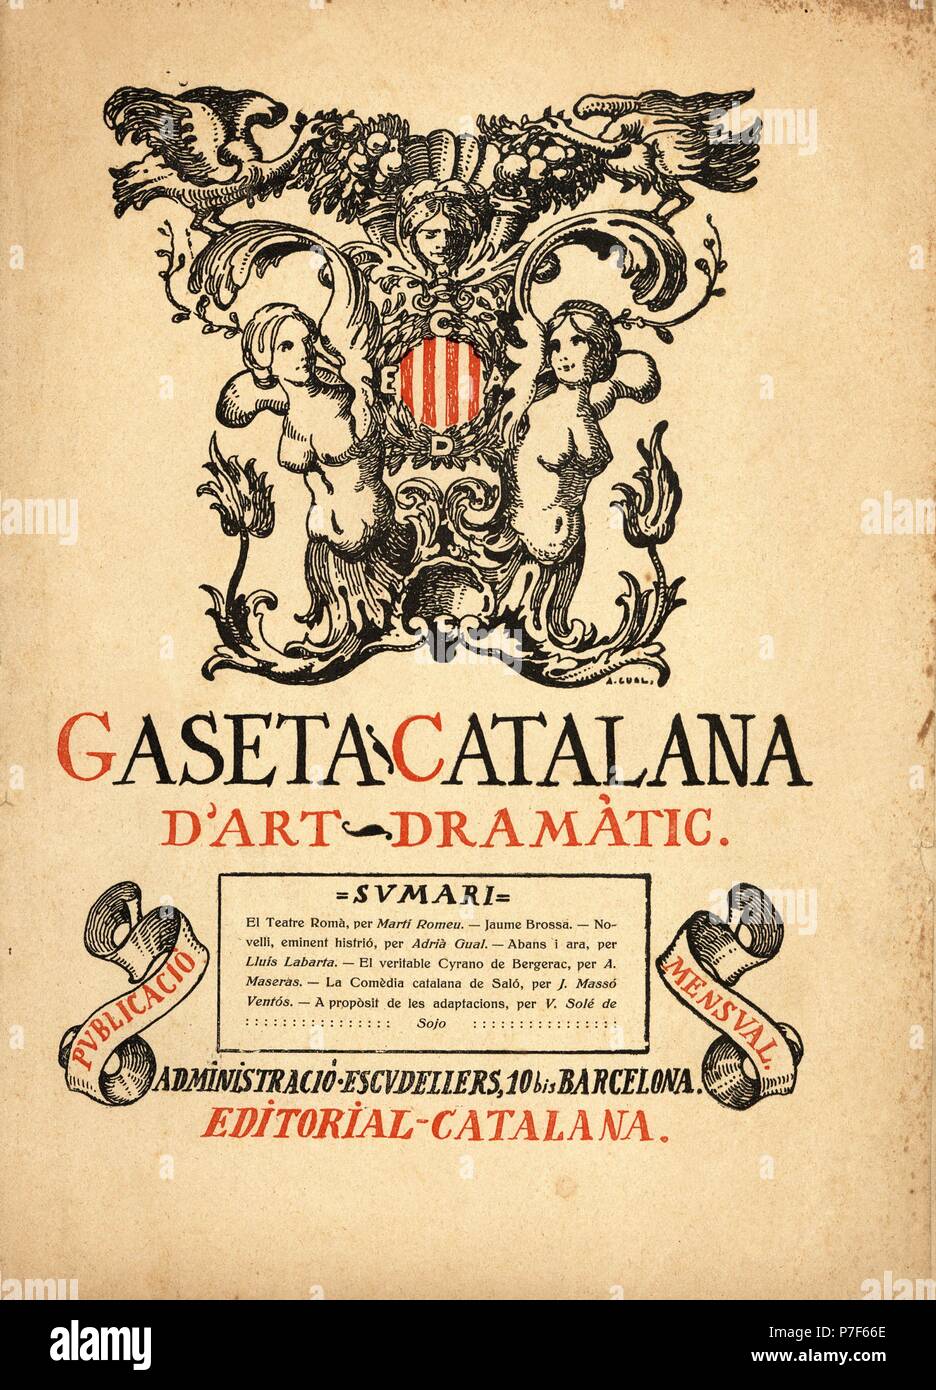 Portada de la revista mensual de arte dramático "Gaseta Catalana", del 15 febrero 1919. Editada en Barcelona. Stock Photo